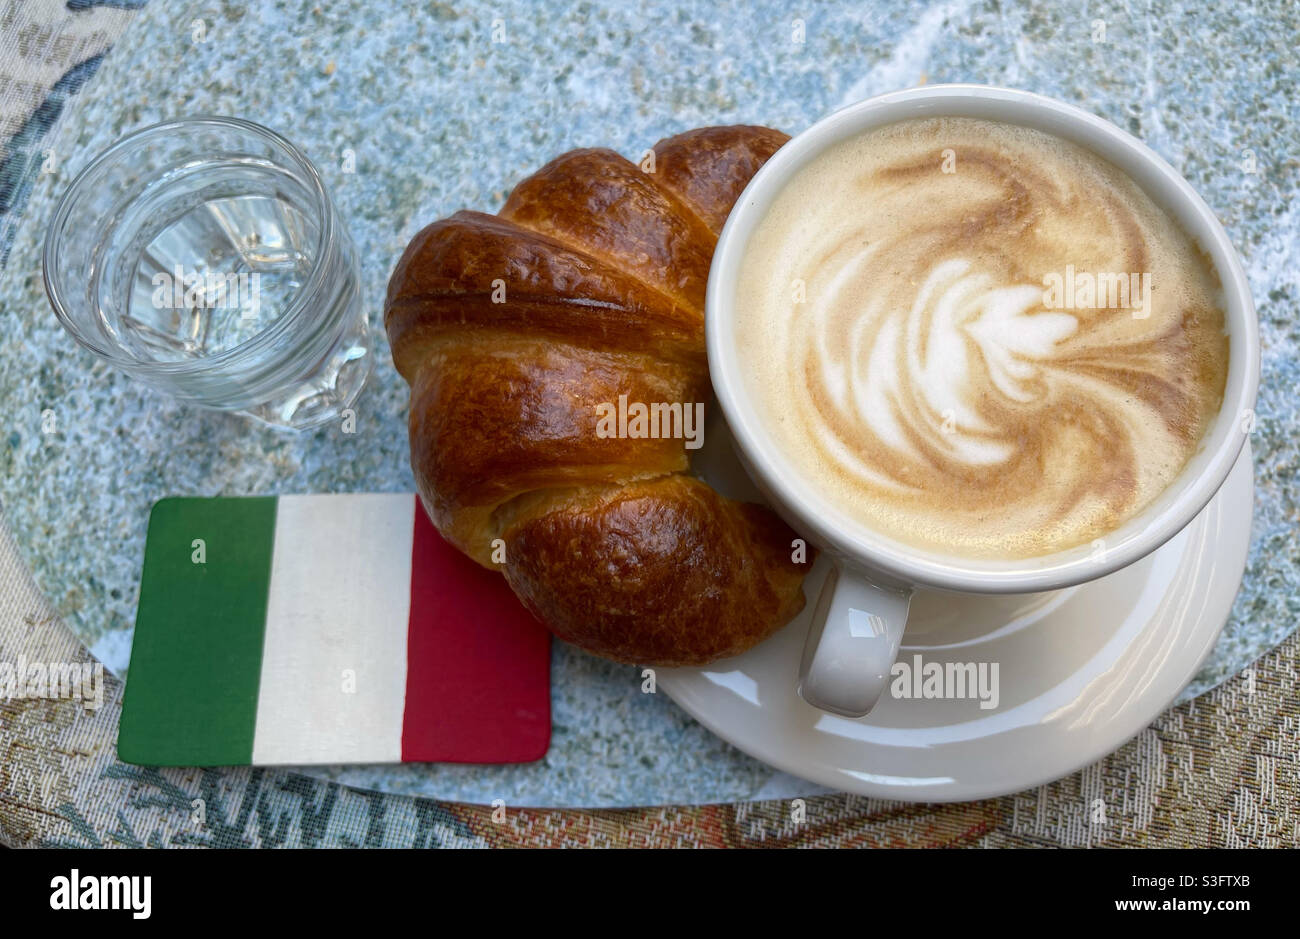 Classica colazione italiana al bar con cappuccino, croissant, un bicchiere d'acqua e la bandiera italiana Foto Stock